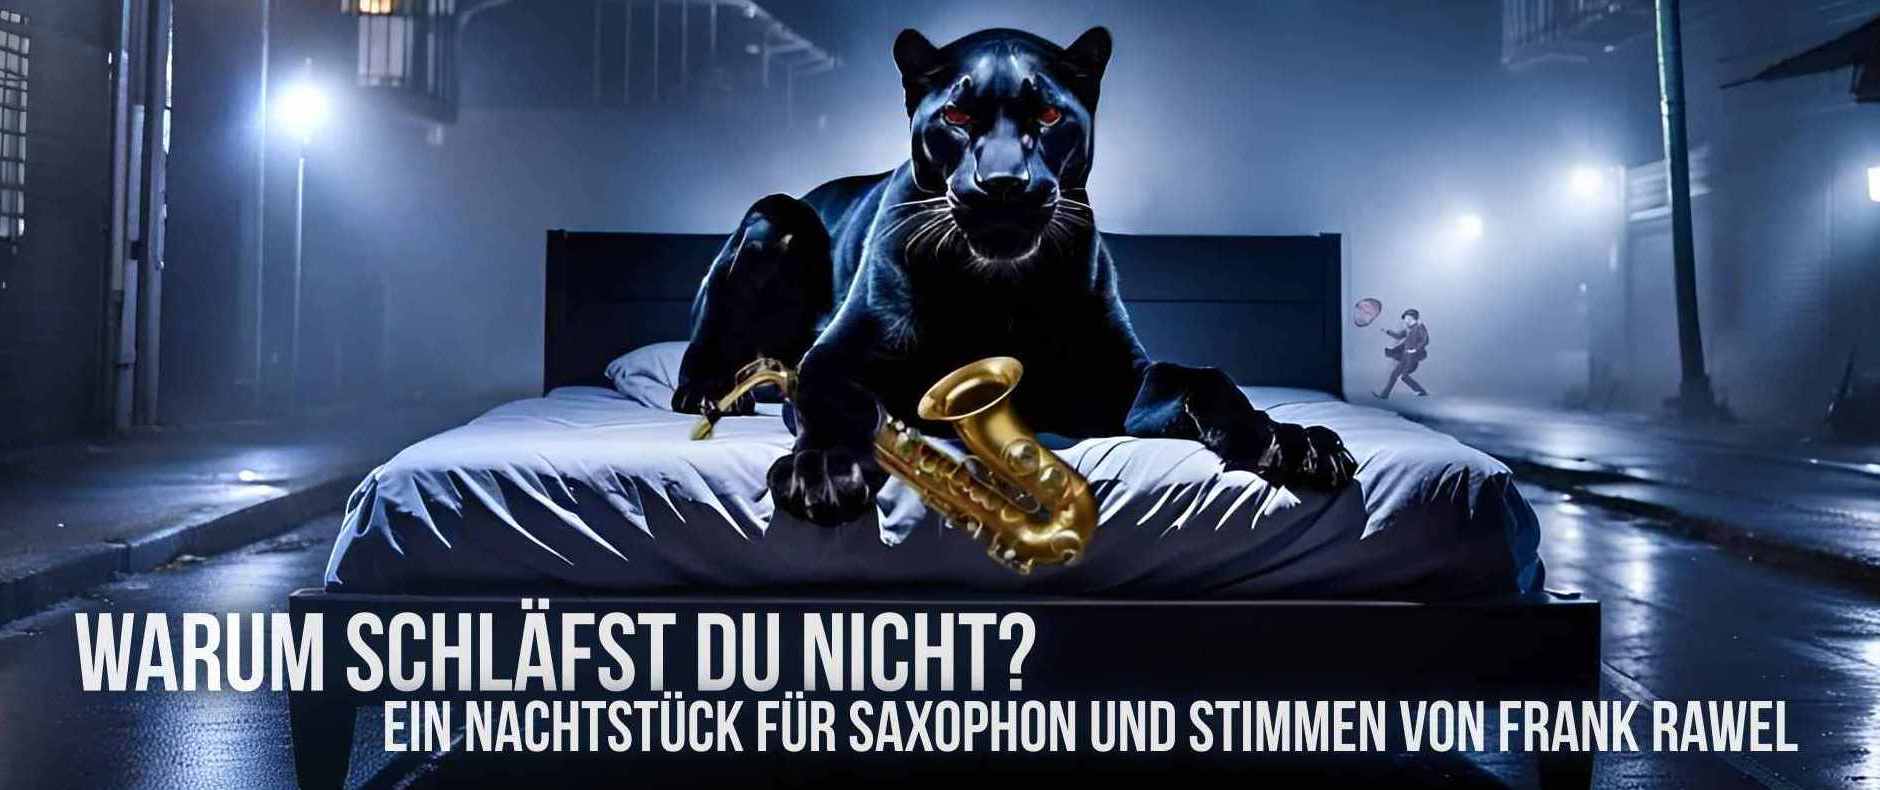 Cover Warum schläfst du nicht, zeigt einen schwarzen Panther nachts auf einem Bett, dass auf der Straße steht